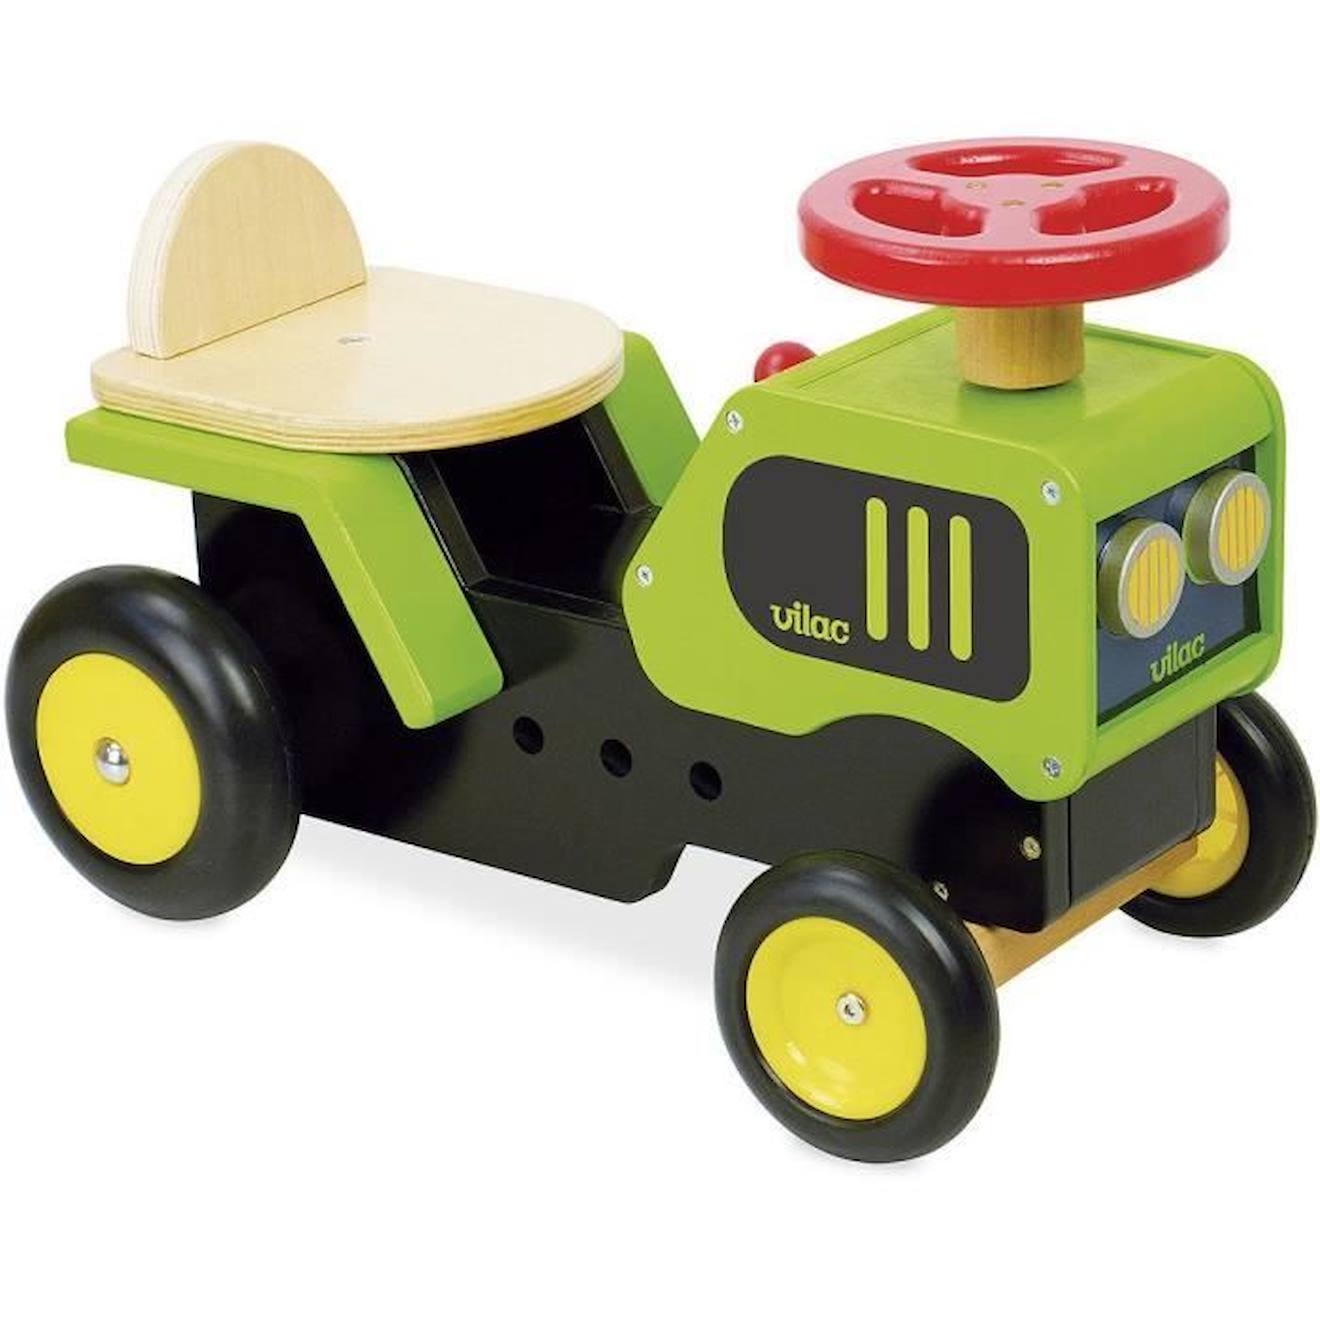 Porteur Tracteur Pour Enfant En Bois - Vilac - 4 Roues - Vert - 18 Mois Vert